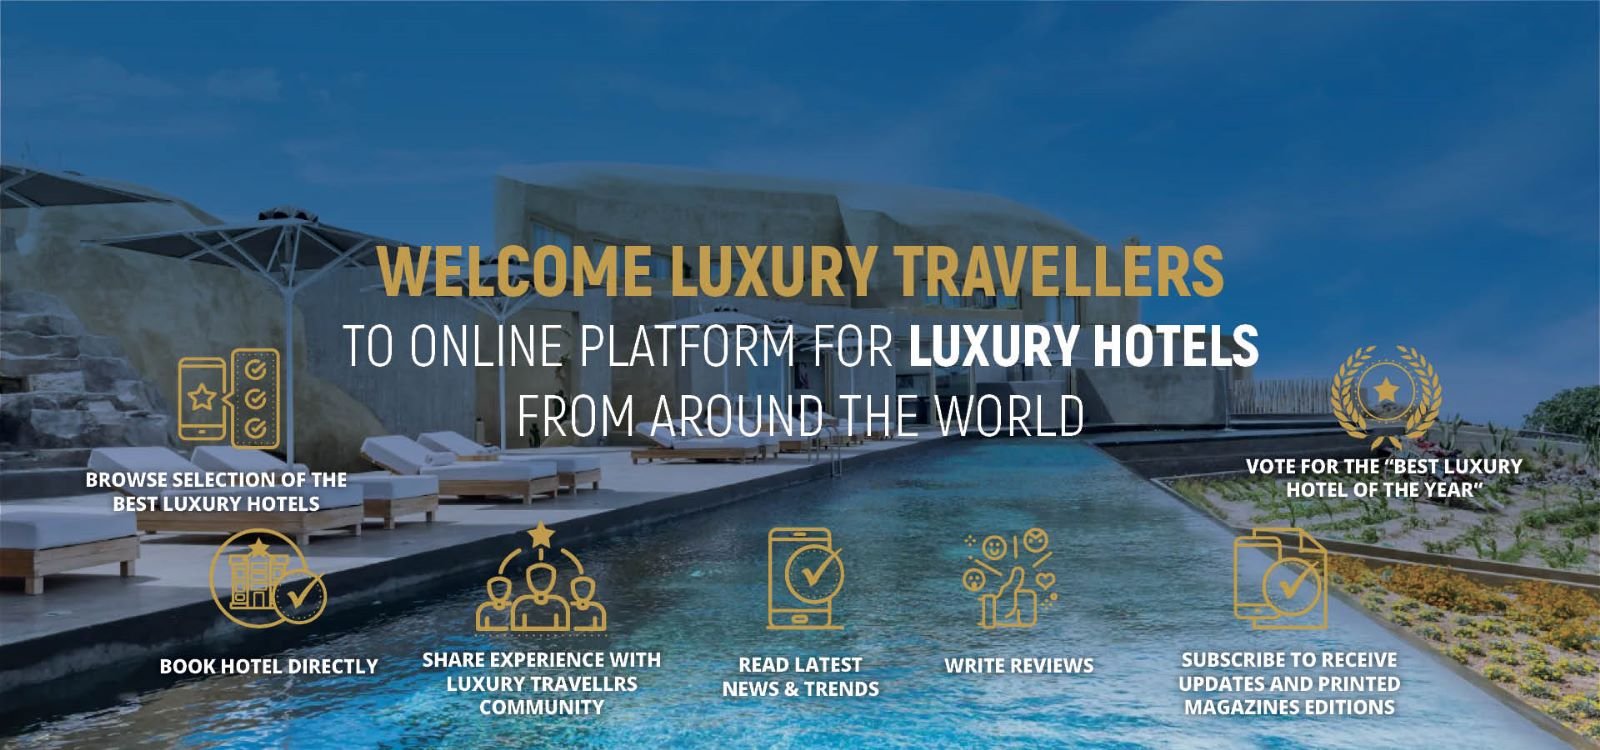 Luxury Hotels Magazines - Slider Images